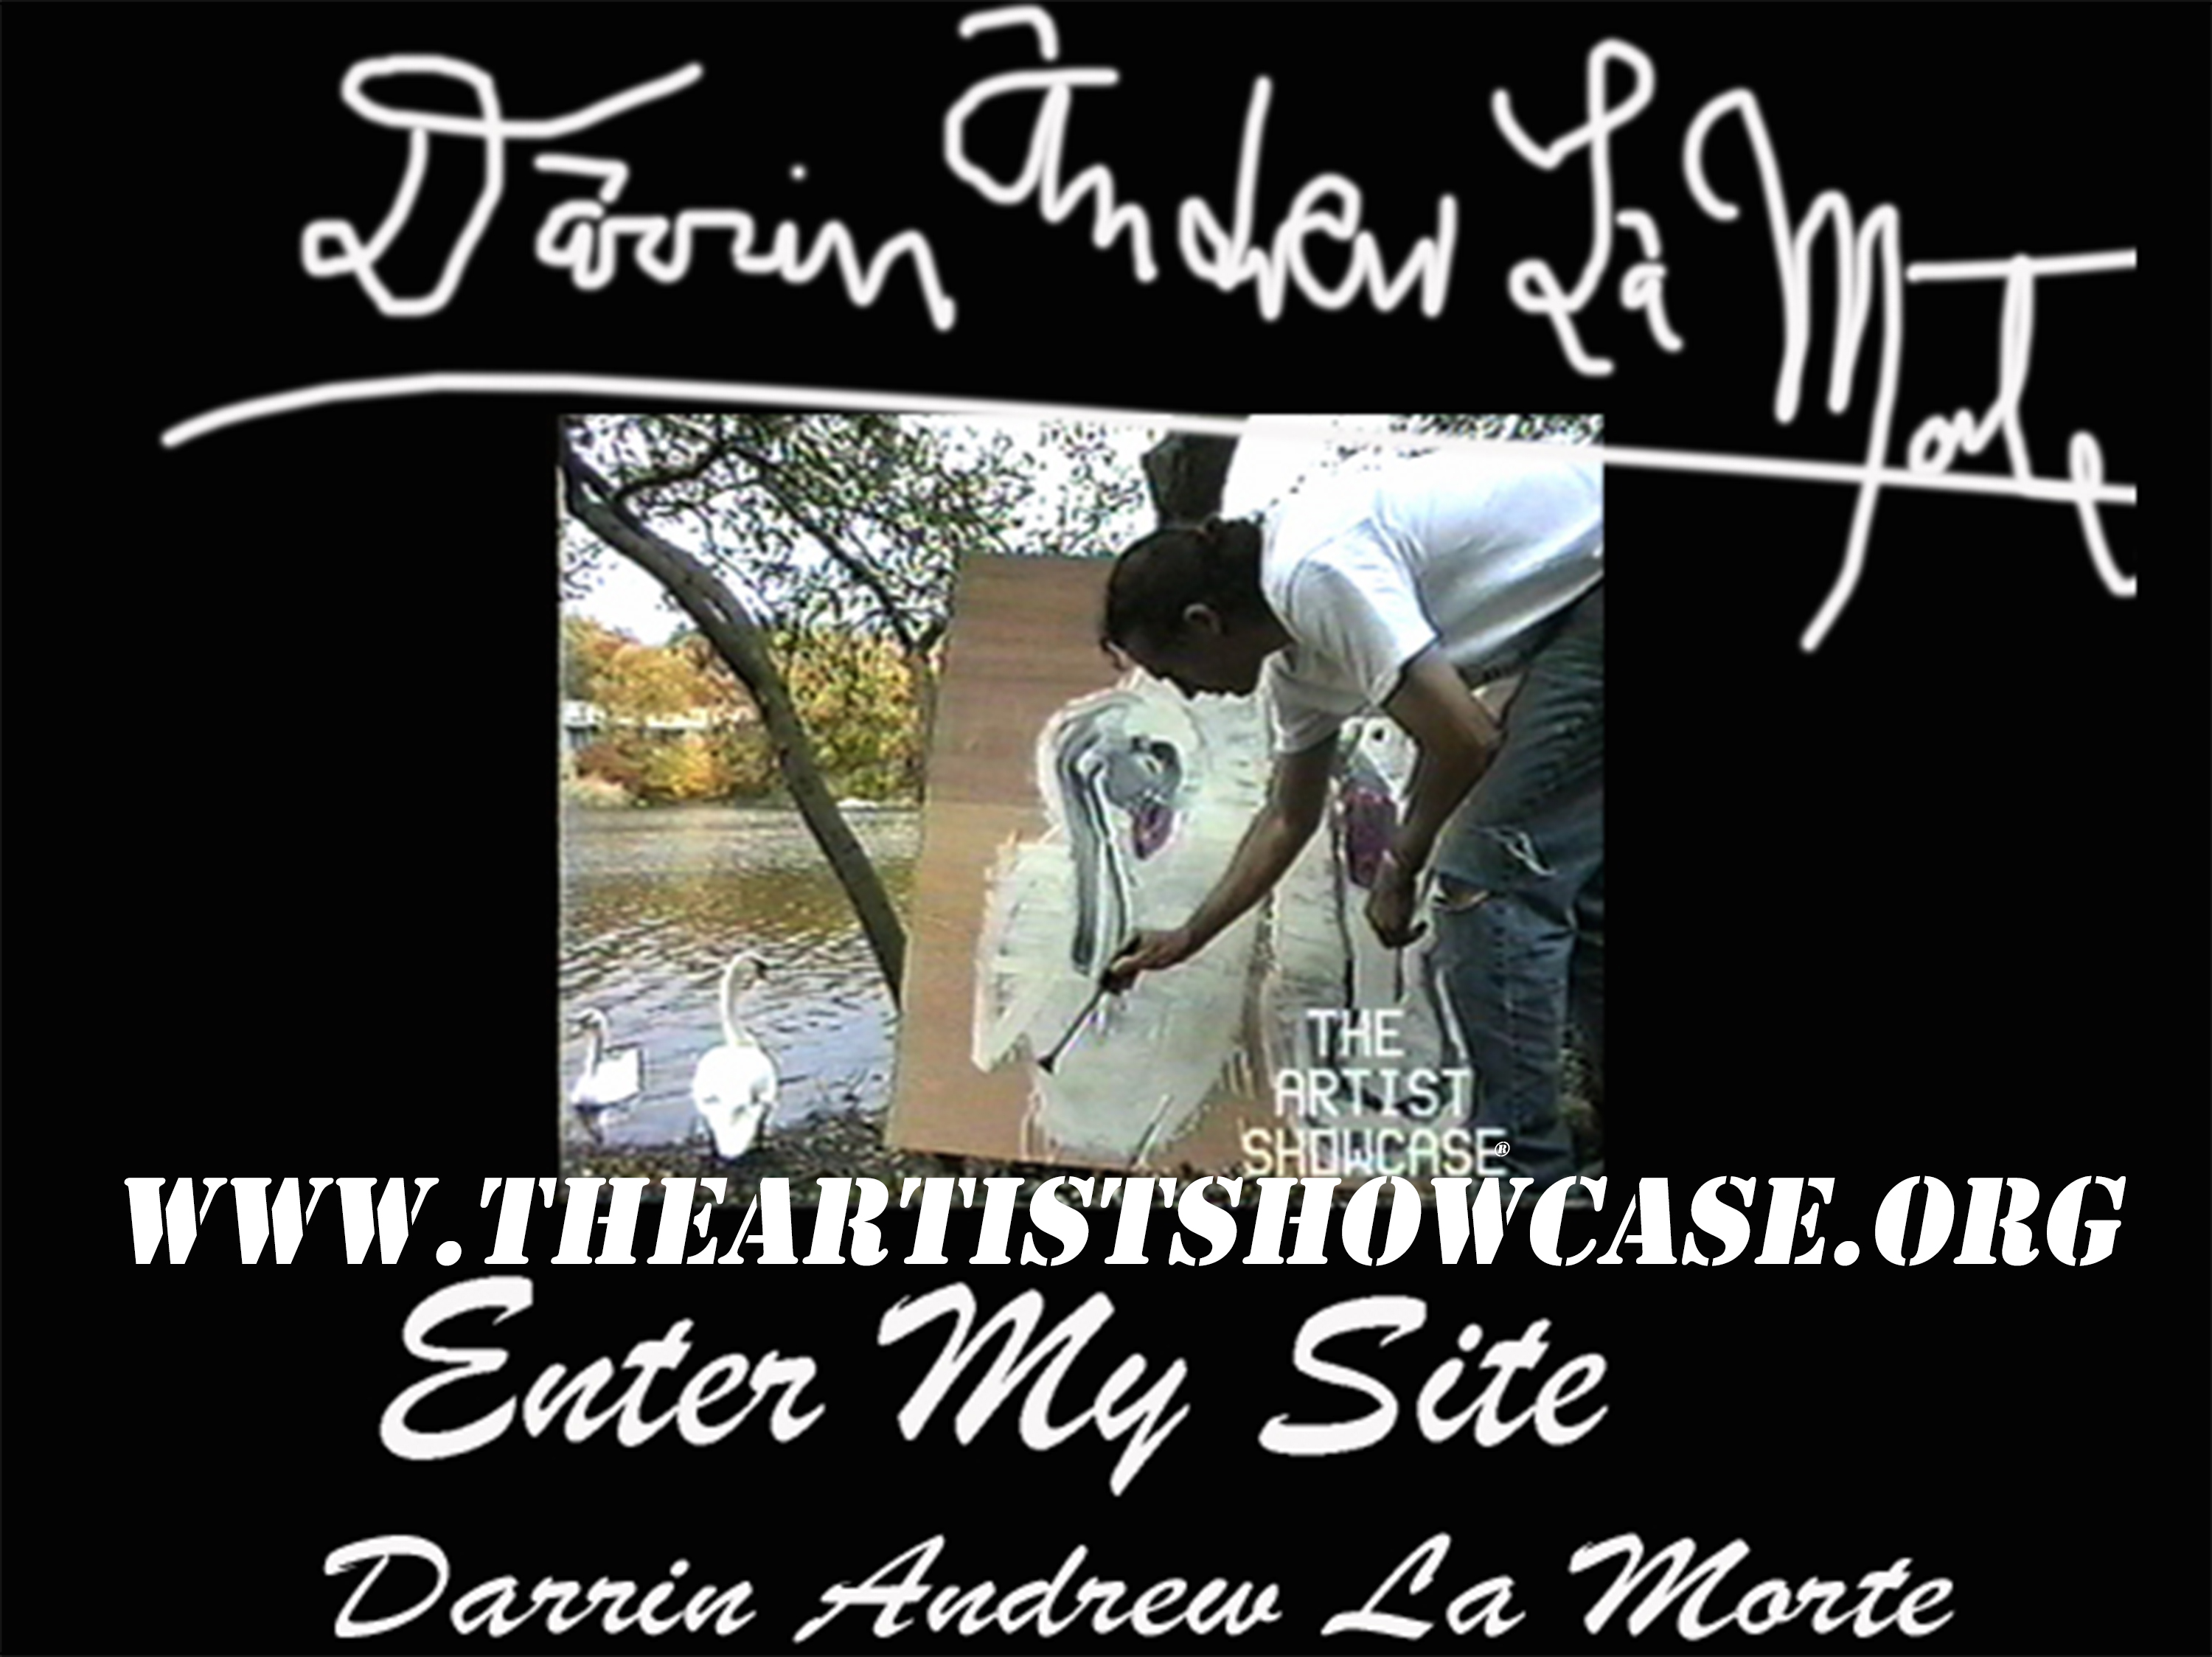 The Artist Showcase DARRIN ANDREW LA MORTE THE ARTIST SHOWCASE a tv show for art lovers www.theartistshowcase.org